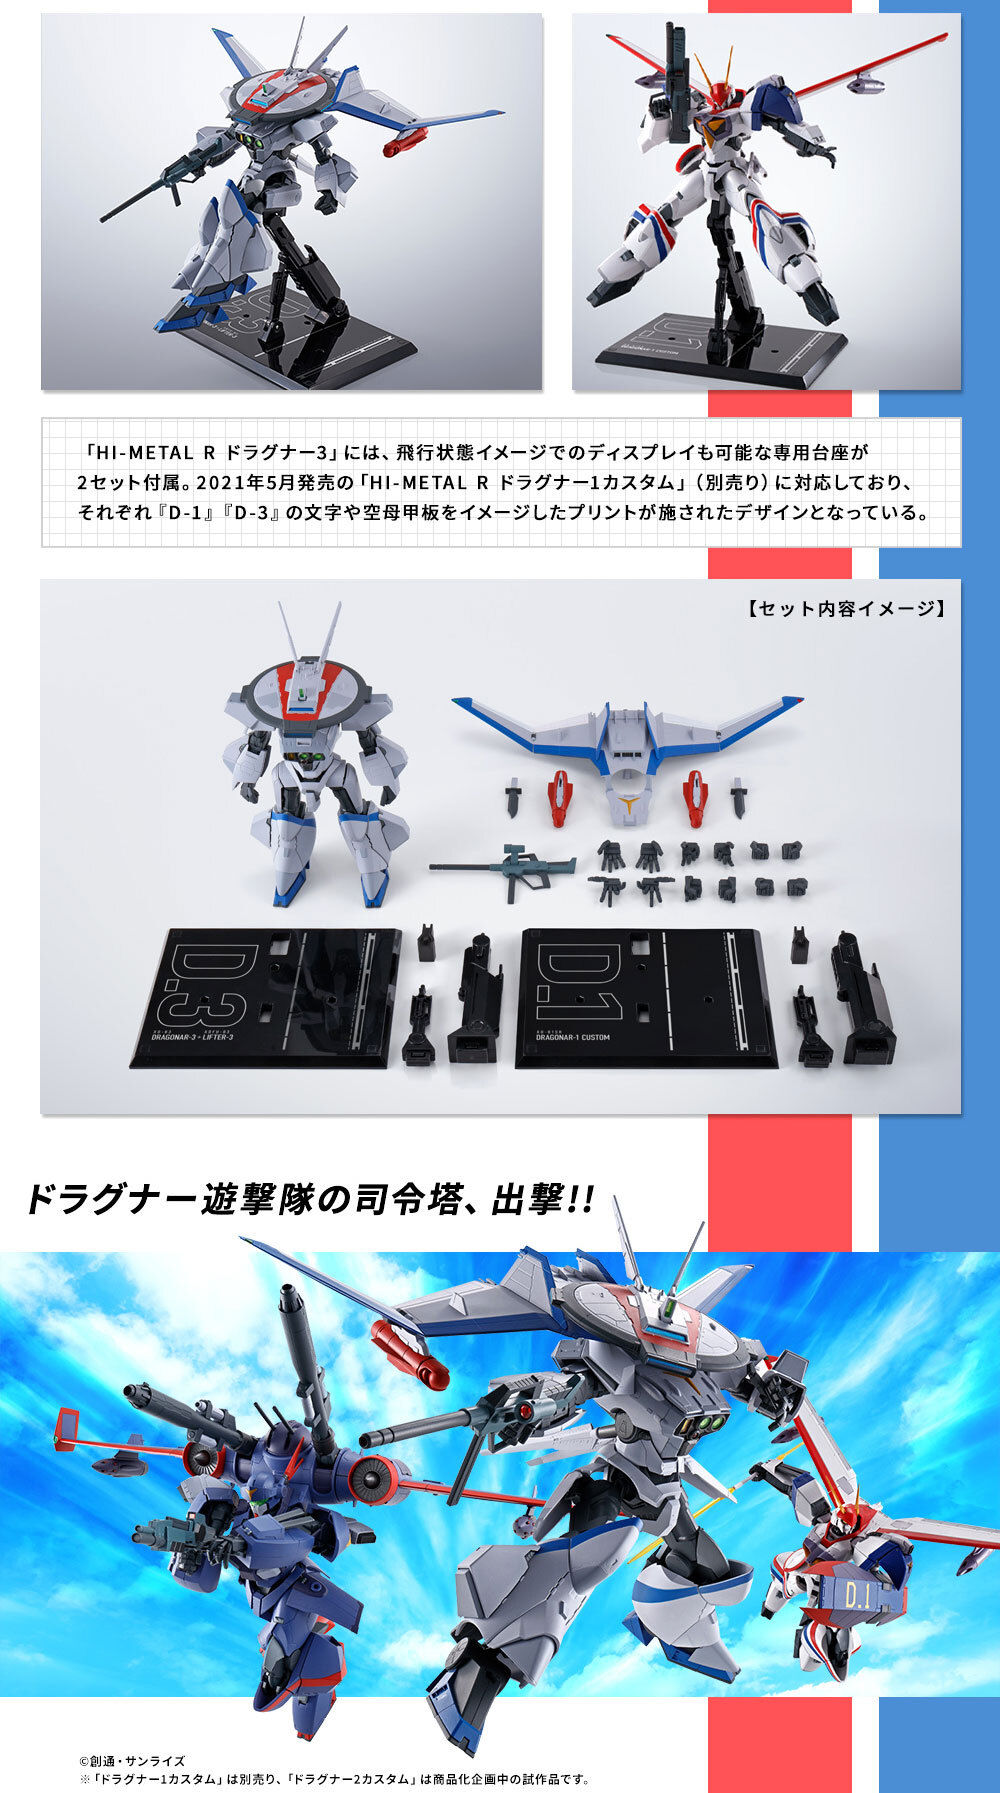 HI-METAL R ドラグナー3 | フィギュア・プラモデル・プラキット ...